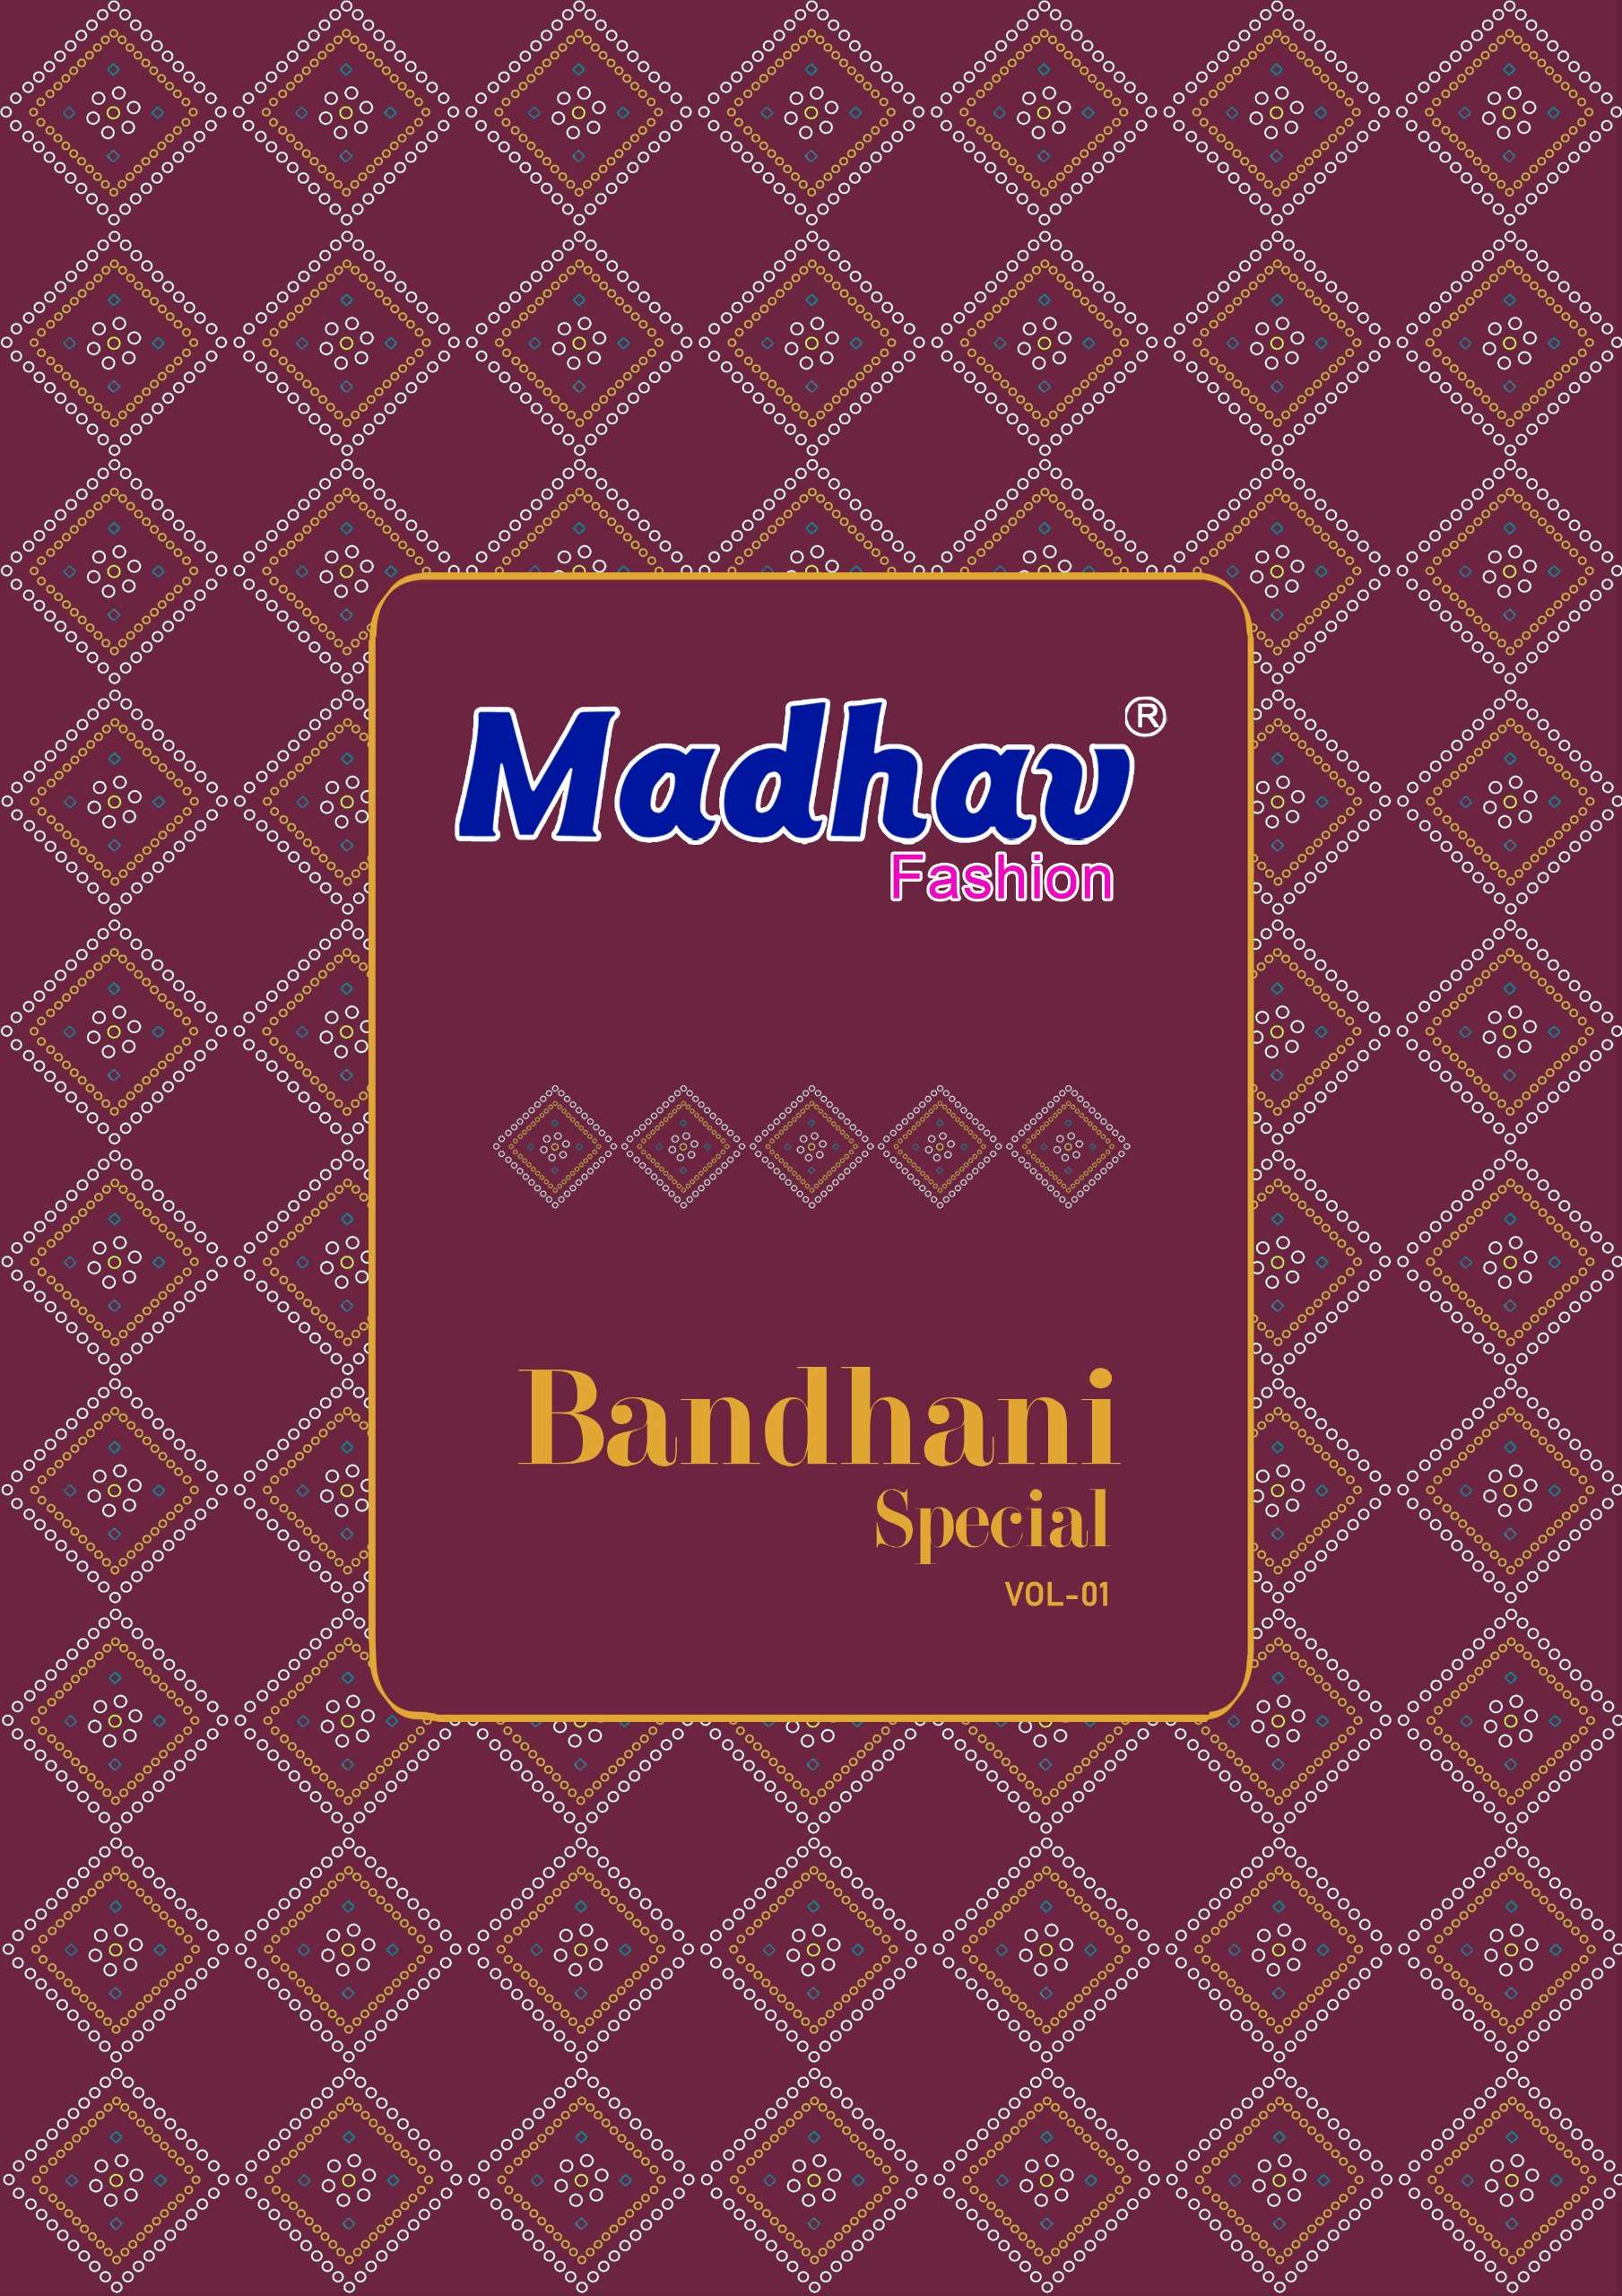 product/Bandhani Special vol 1_01.jpeg